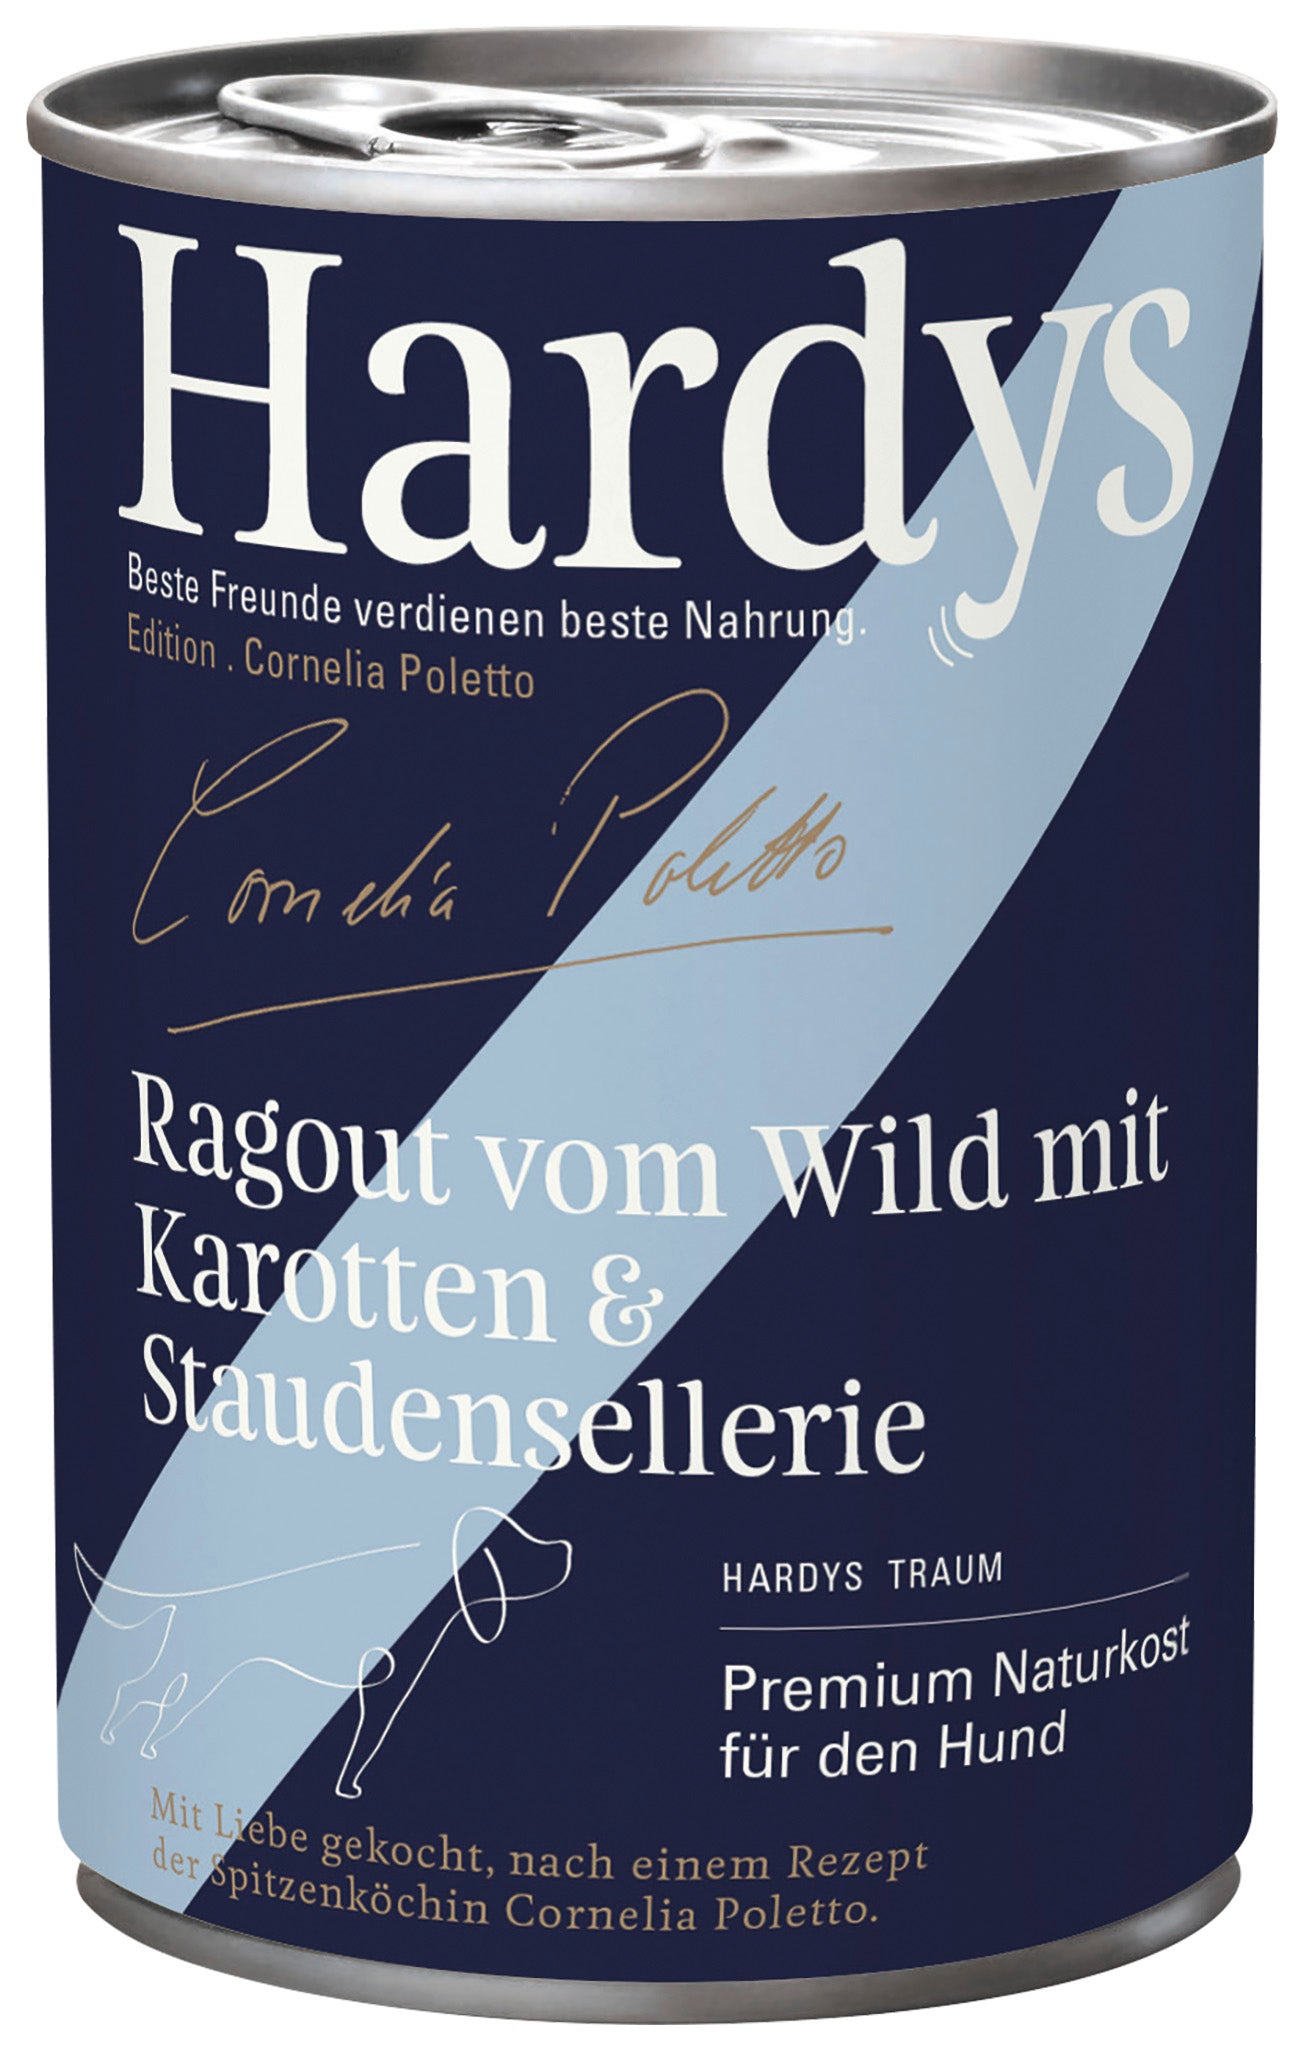 Hardys Edition Poletto • Ragout vom Wild mit Karotten & Staudensellerie 400g